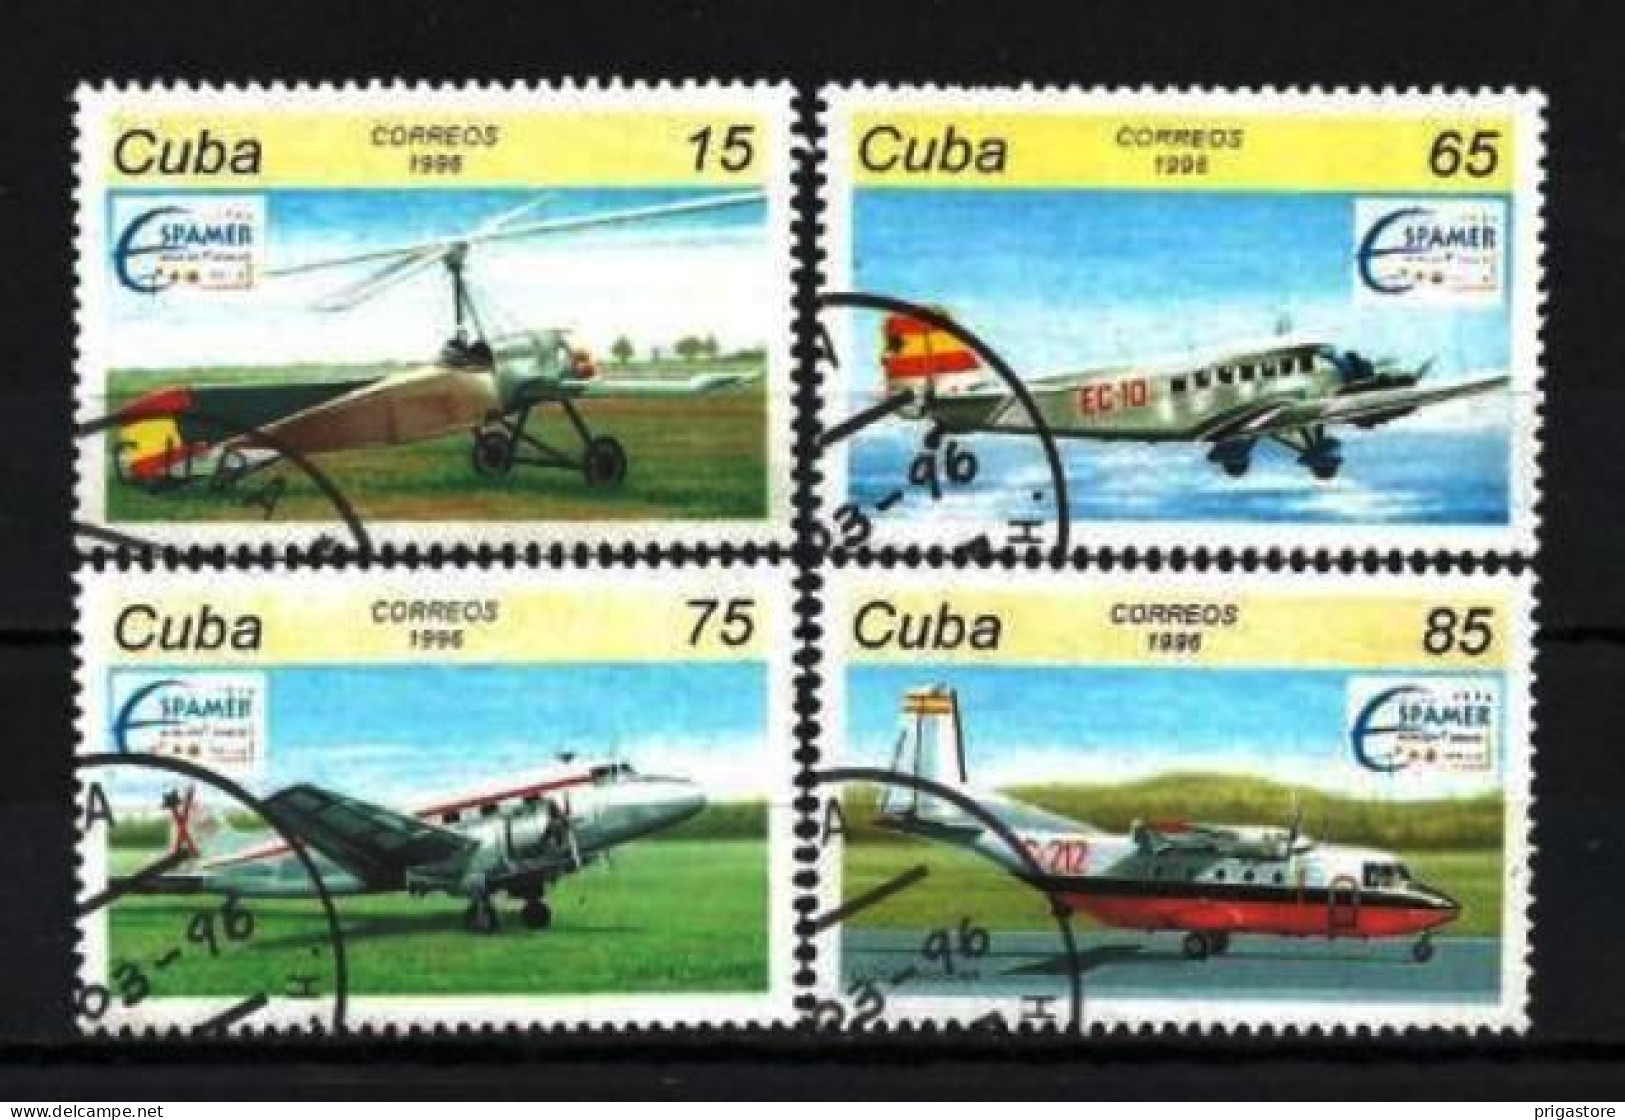 Cuba 1996 Avions (28) Yvert N° 3520 à 3523 Oblitéré Used - Oblitérés